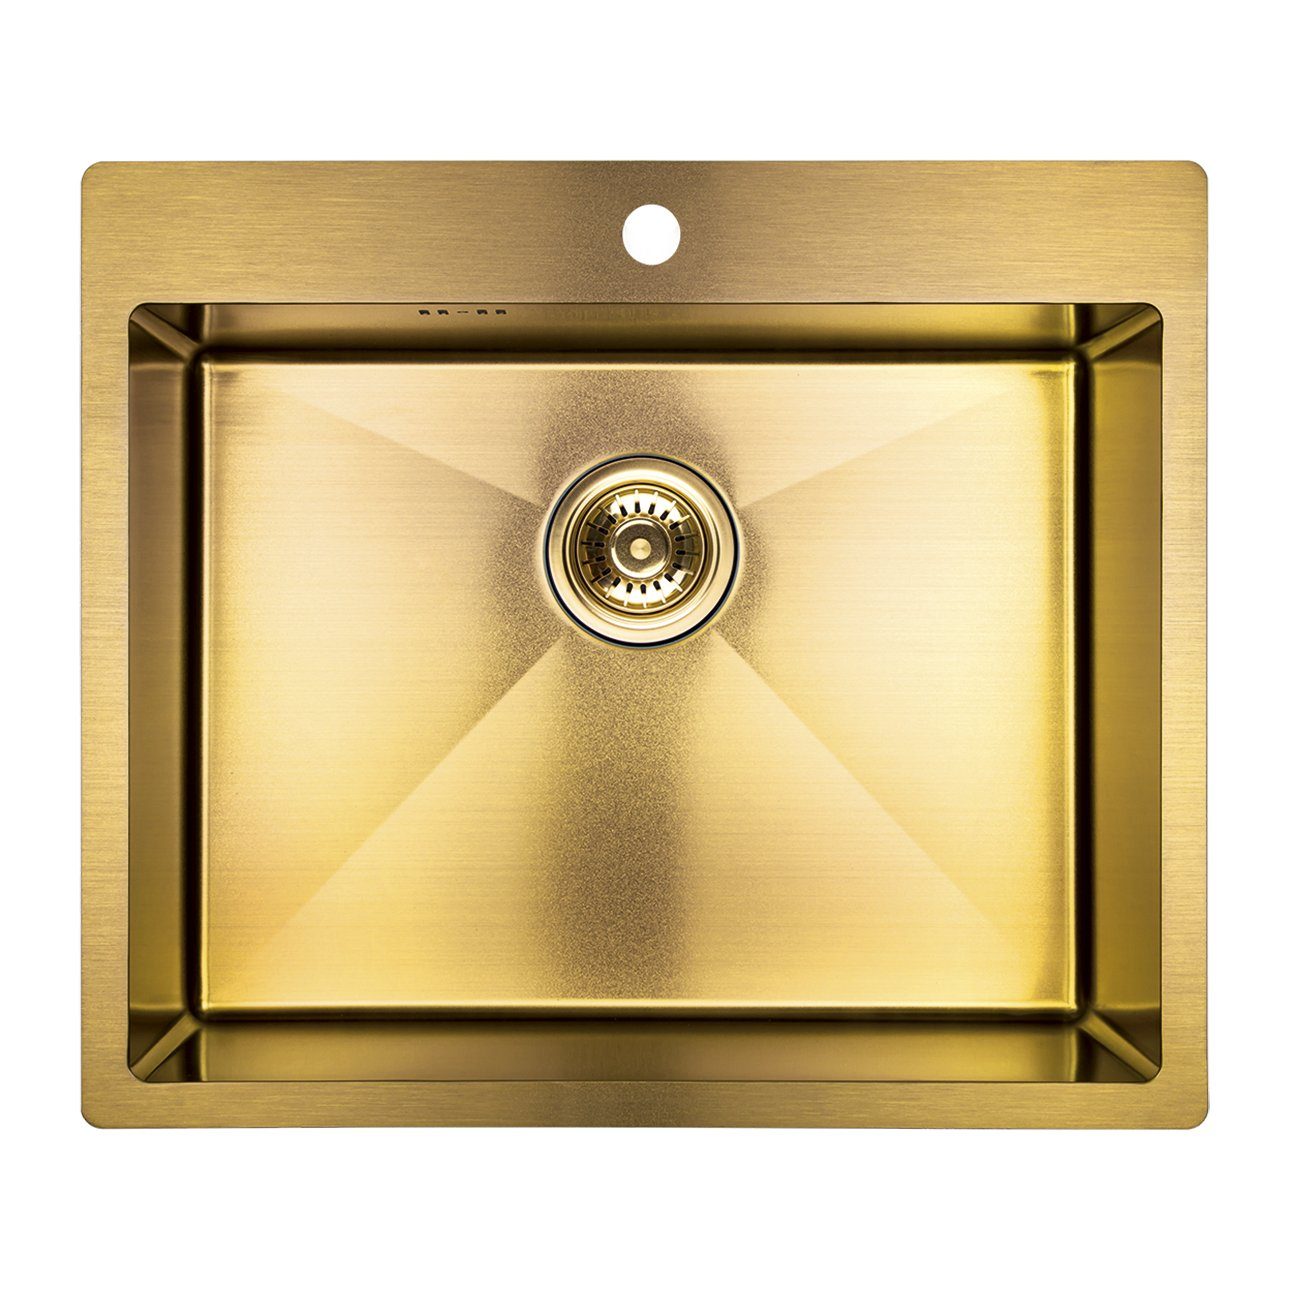 KOLMAN Küchenspüle Einzelbecken Marmara Stahl Spülbecken, Rechteckig, 51/59 cm, Space Saving Siphon GRATIS Gold